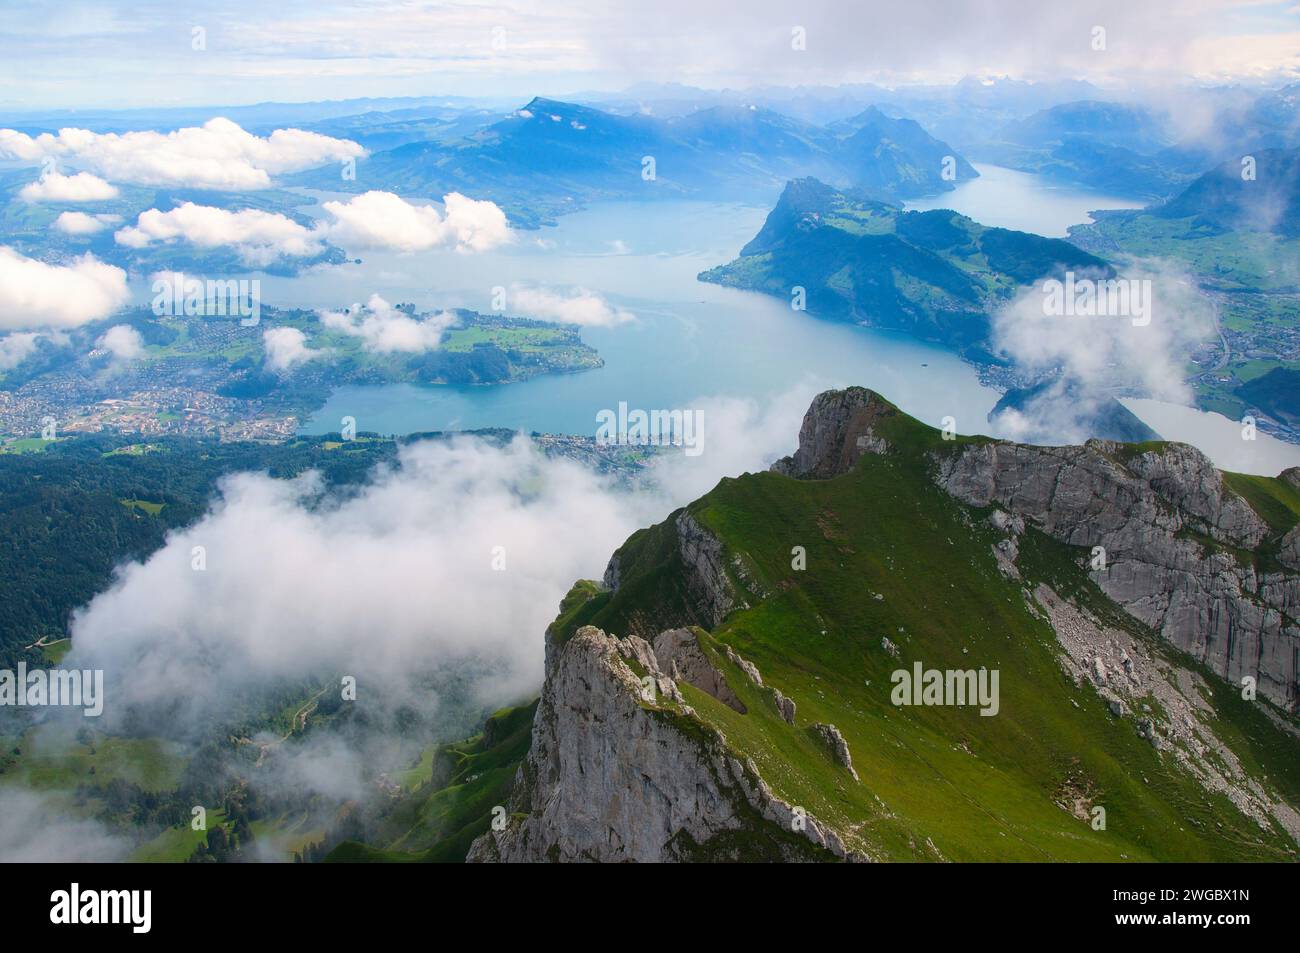 Vista aérea desde el Monte Pilatus sobre el lago de Lucerna, Suiza Foto de stock